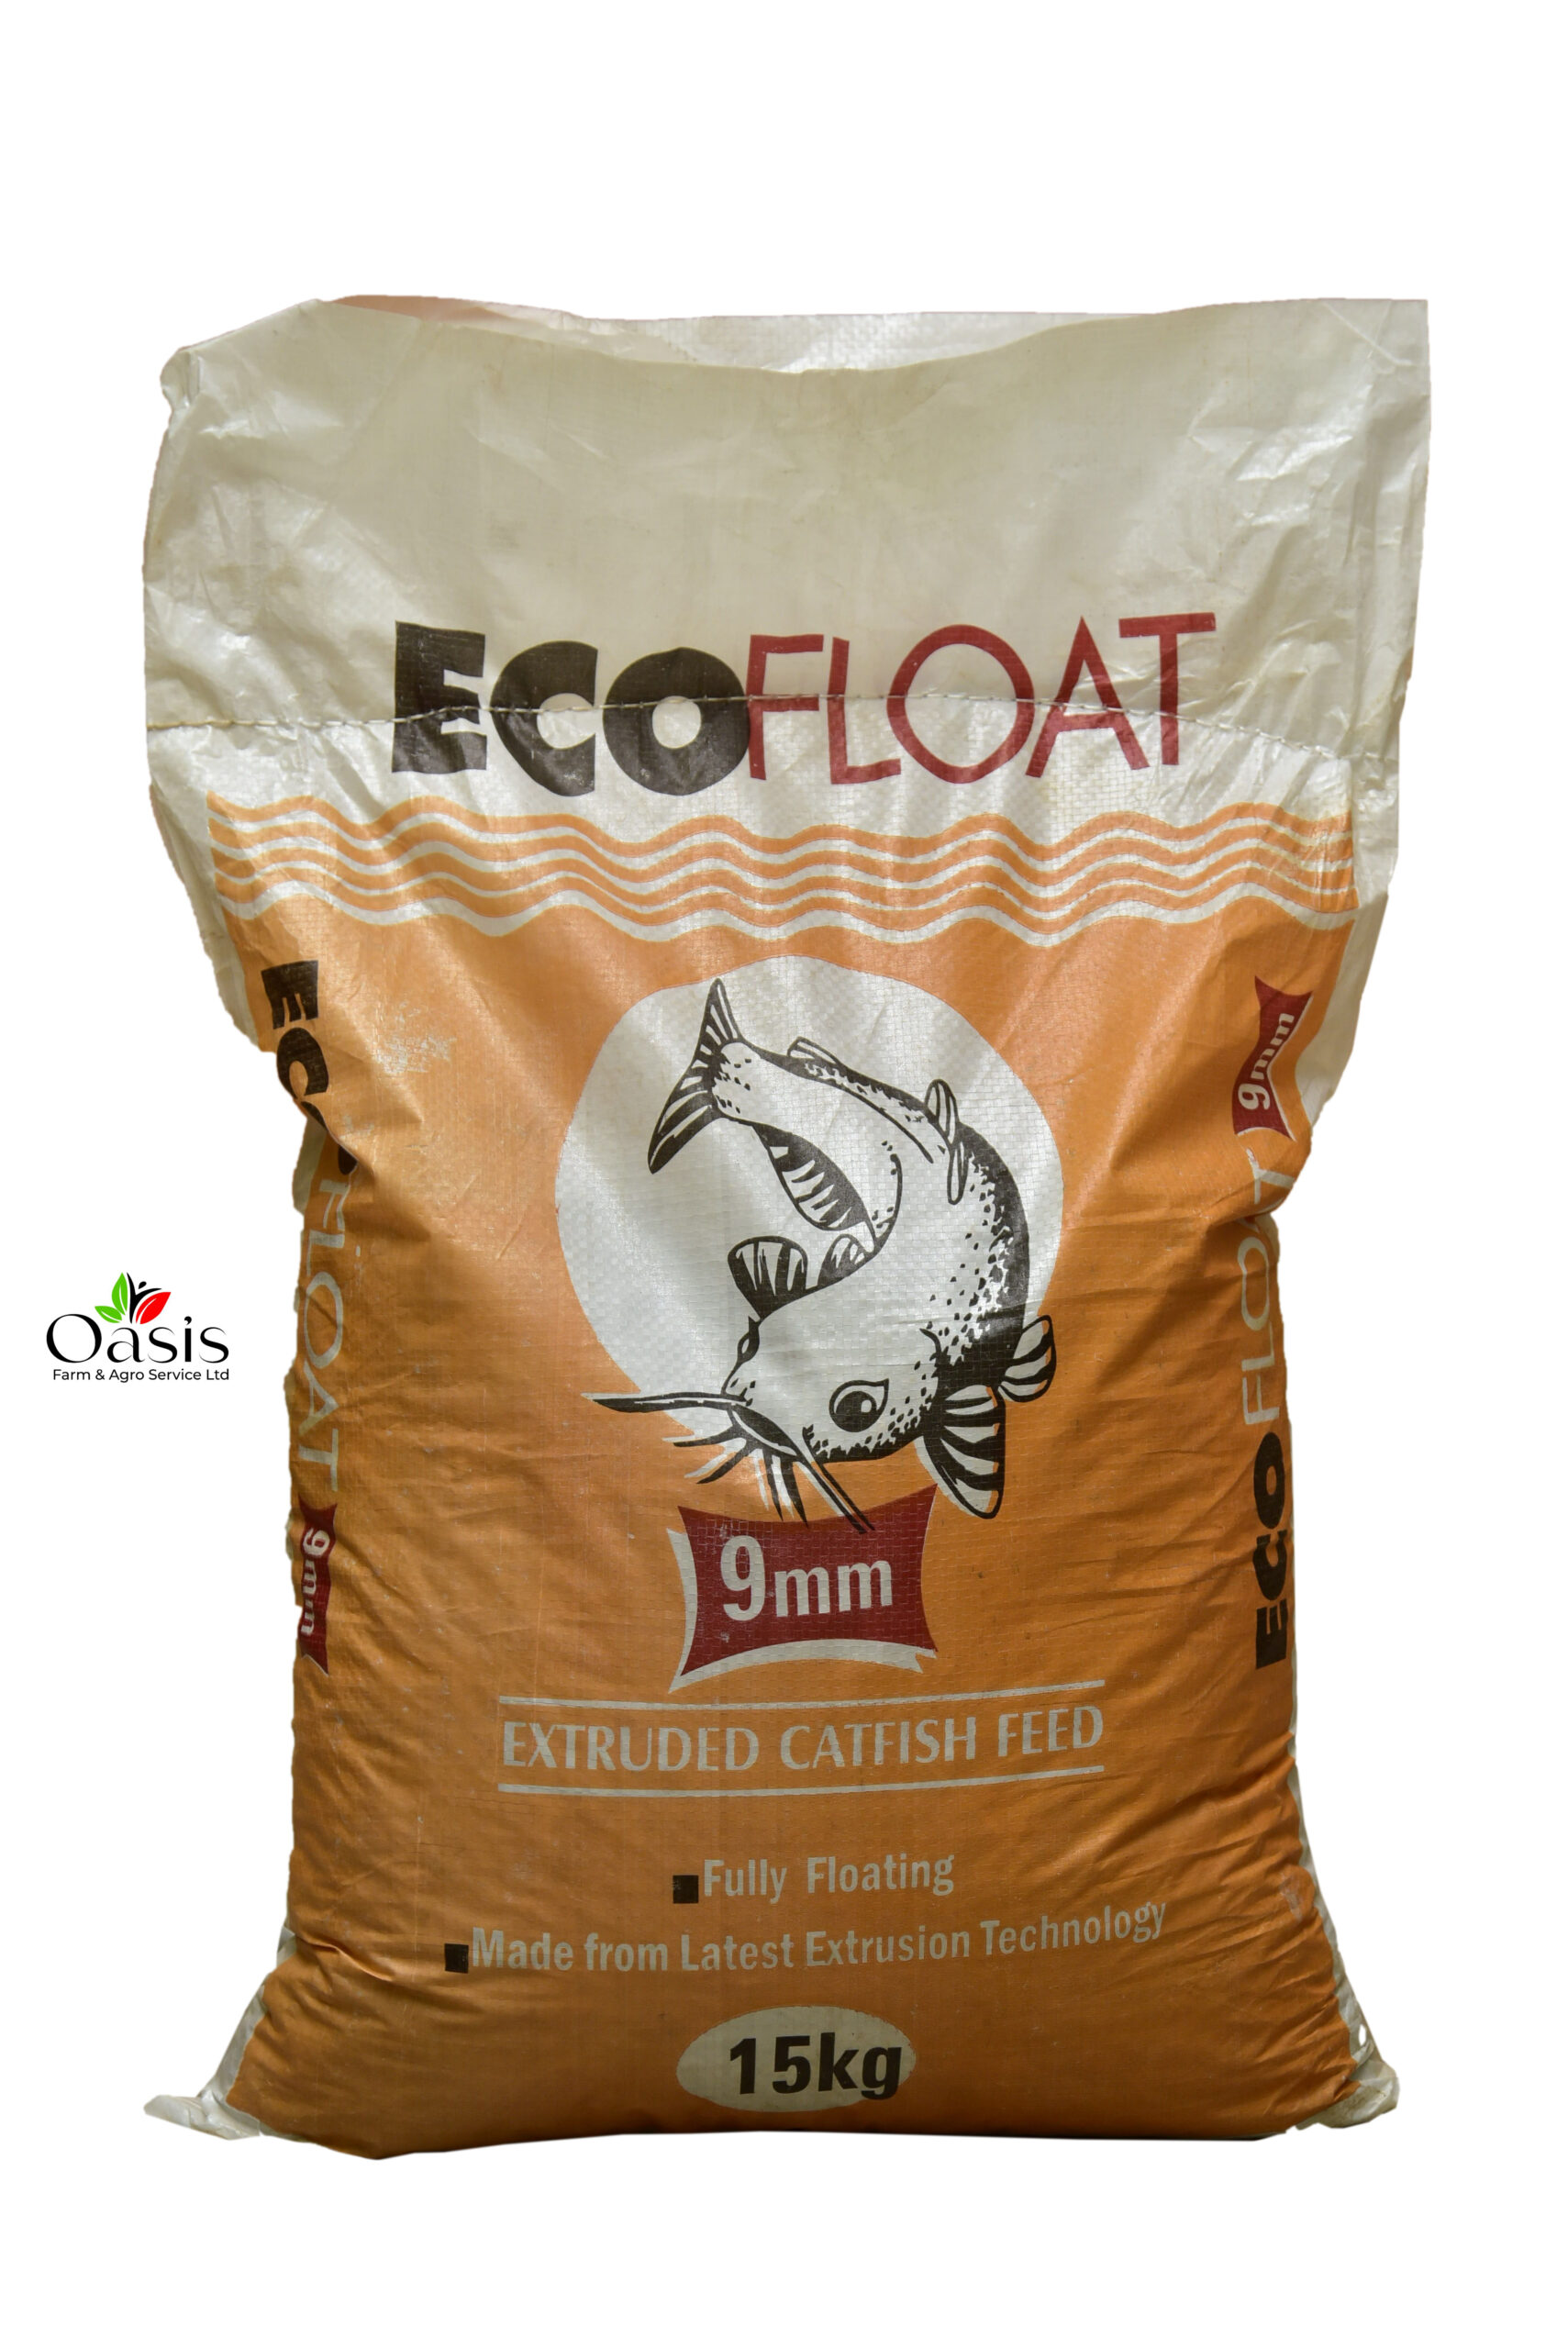 Ecofloat 9mm Catfish Feed 15kg